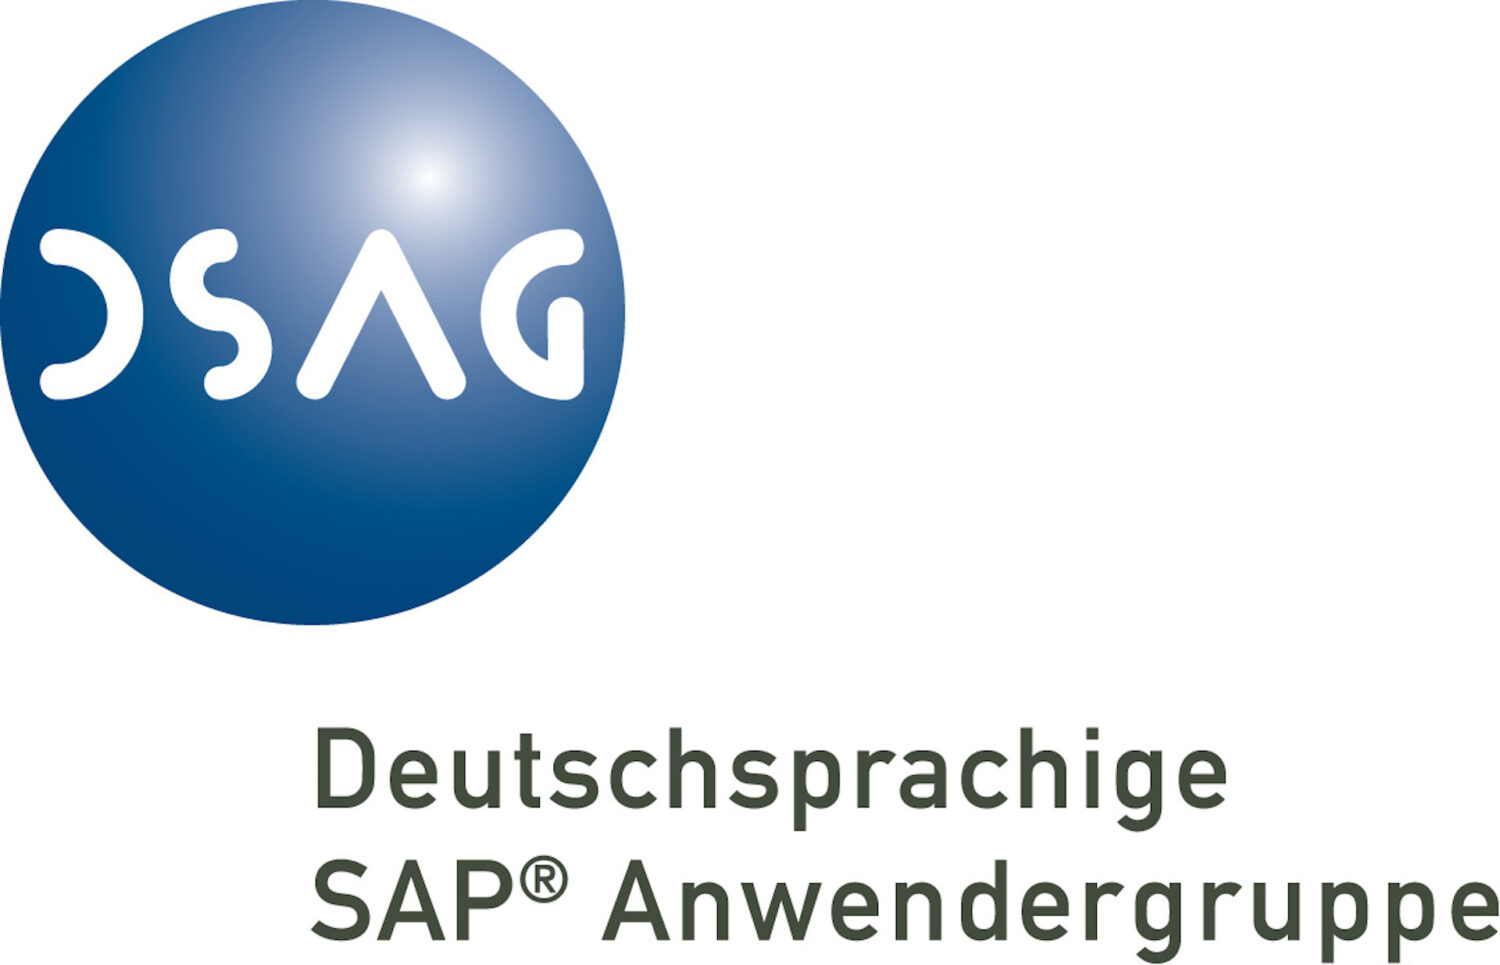 Autexis IT AG ist neu Mitglied bei der DSAG (Deutschsprachige SAP Anwendergruppe)